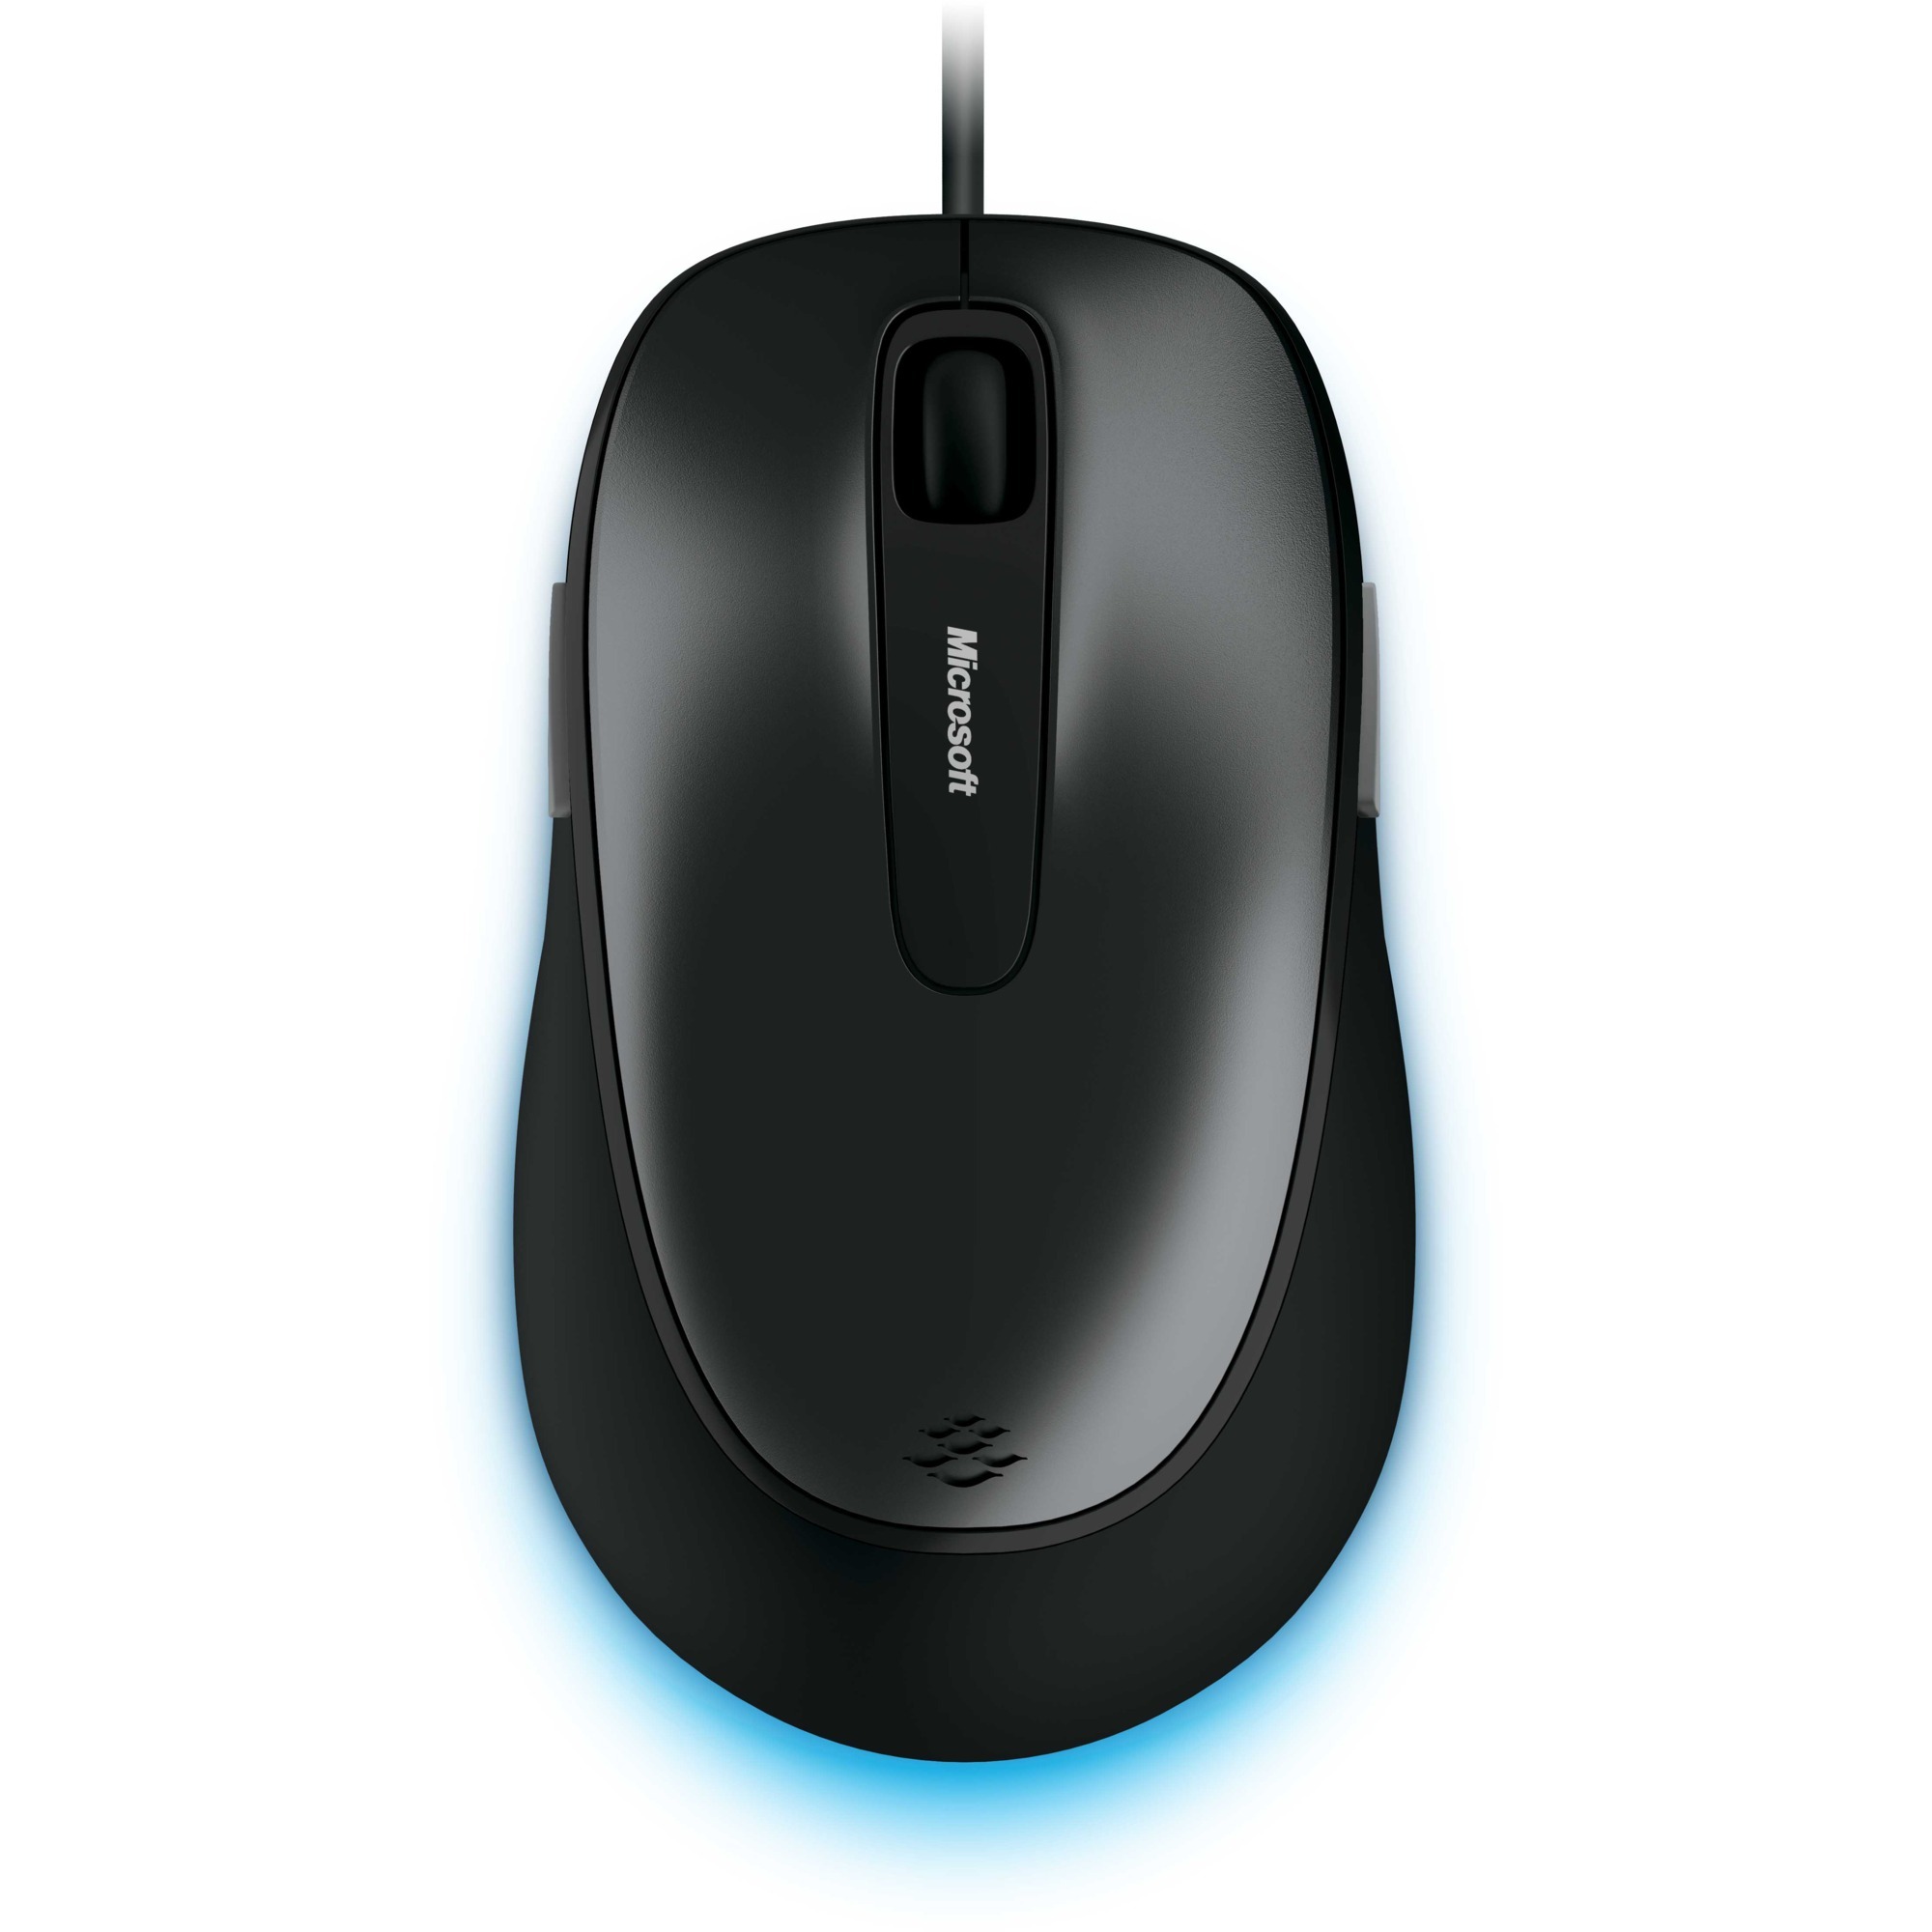 Image of Alternate - Comfort Mouse 4500, Maus online einkaufen bei Alternate